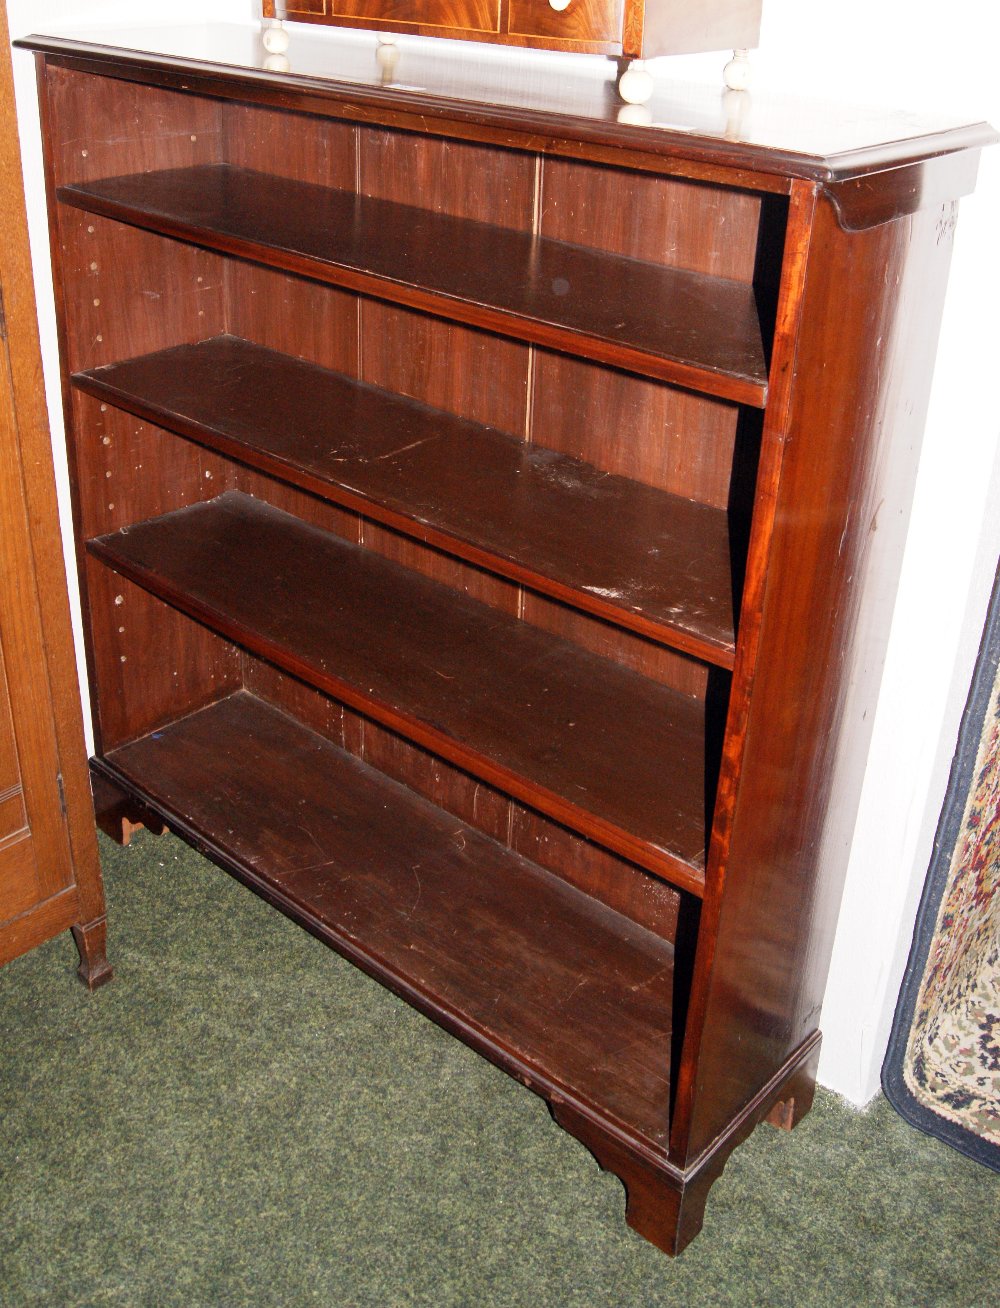 Mahogany open-shelved bookcase